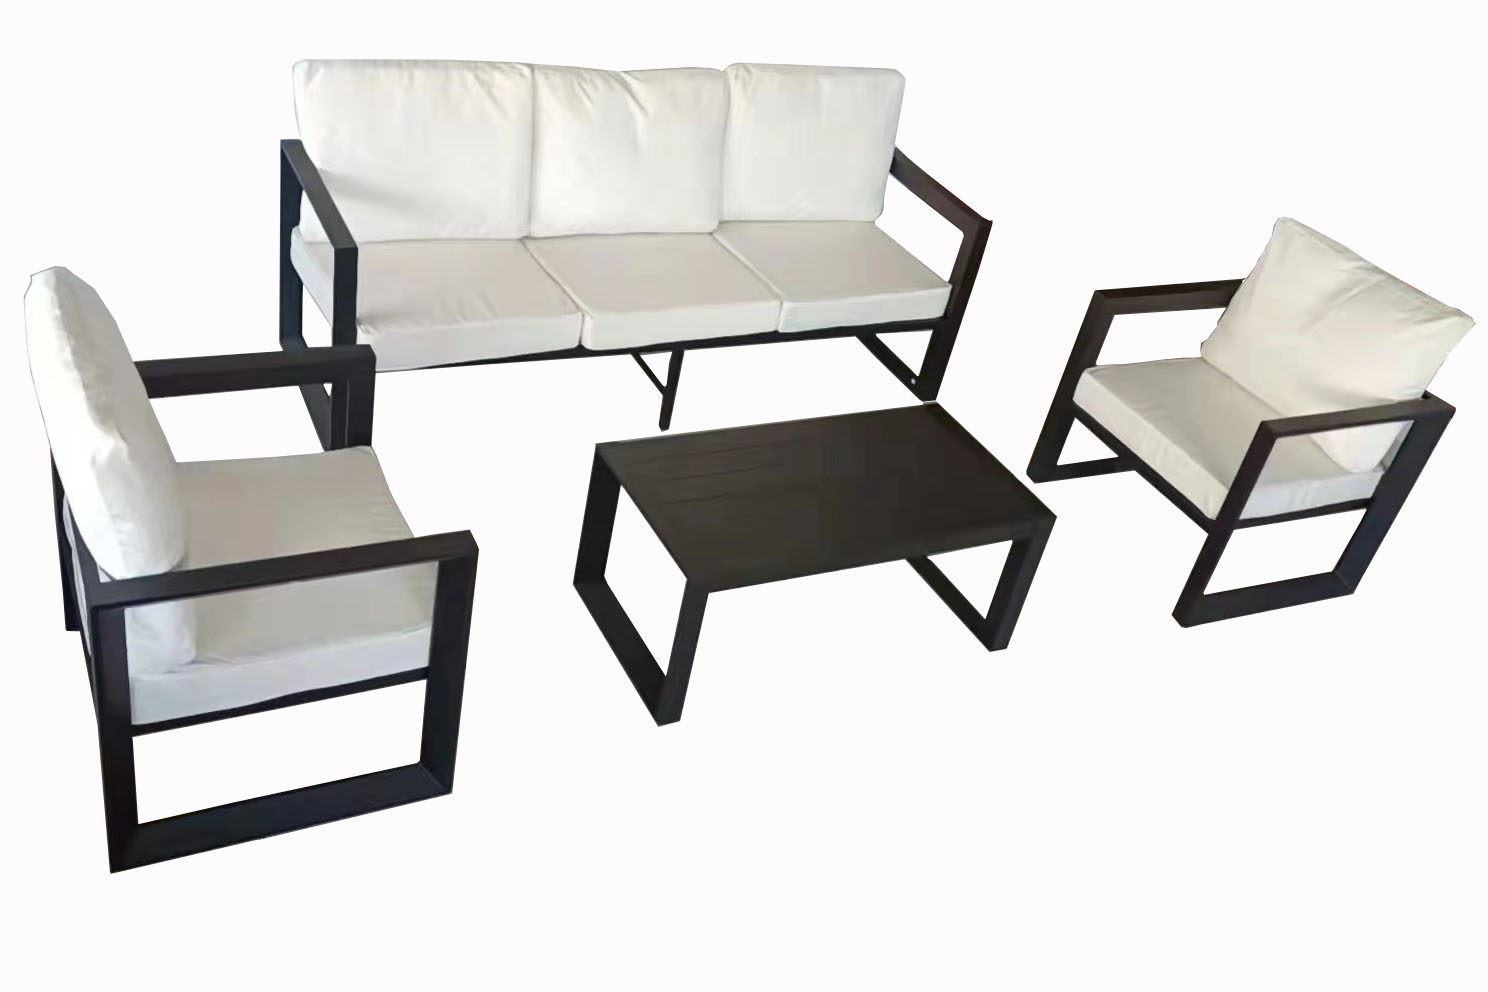 Morden  outdoor furniture new modern home style outdoor garden patio furniture Alum sofa set